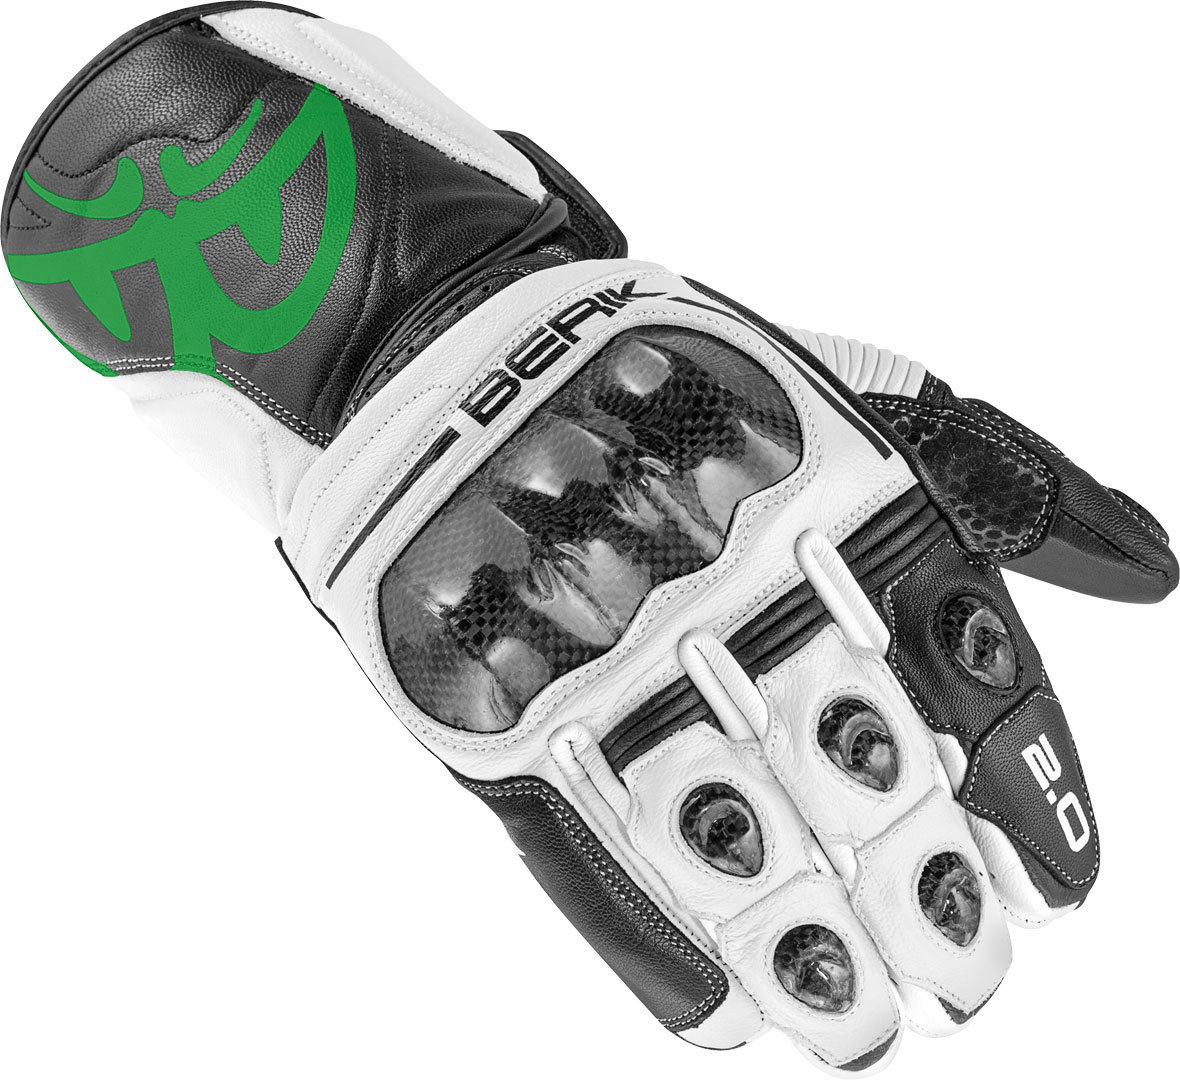 перчатки berik 2 0 st для мотоциклистов черный зеленый Перчатки Berik 2.0 ST для мотоциклистов, черный/зеленый